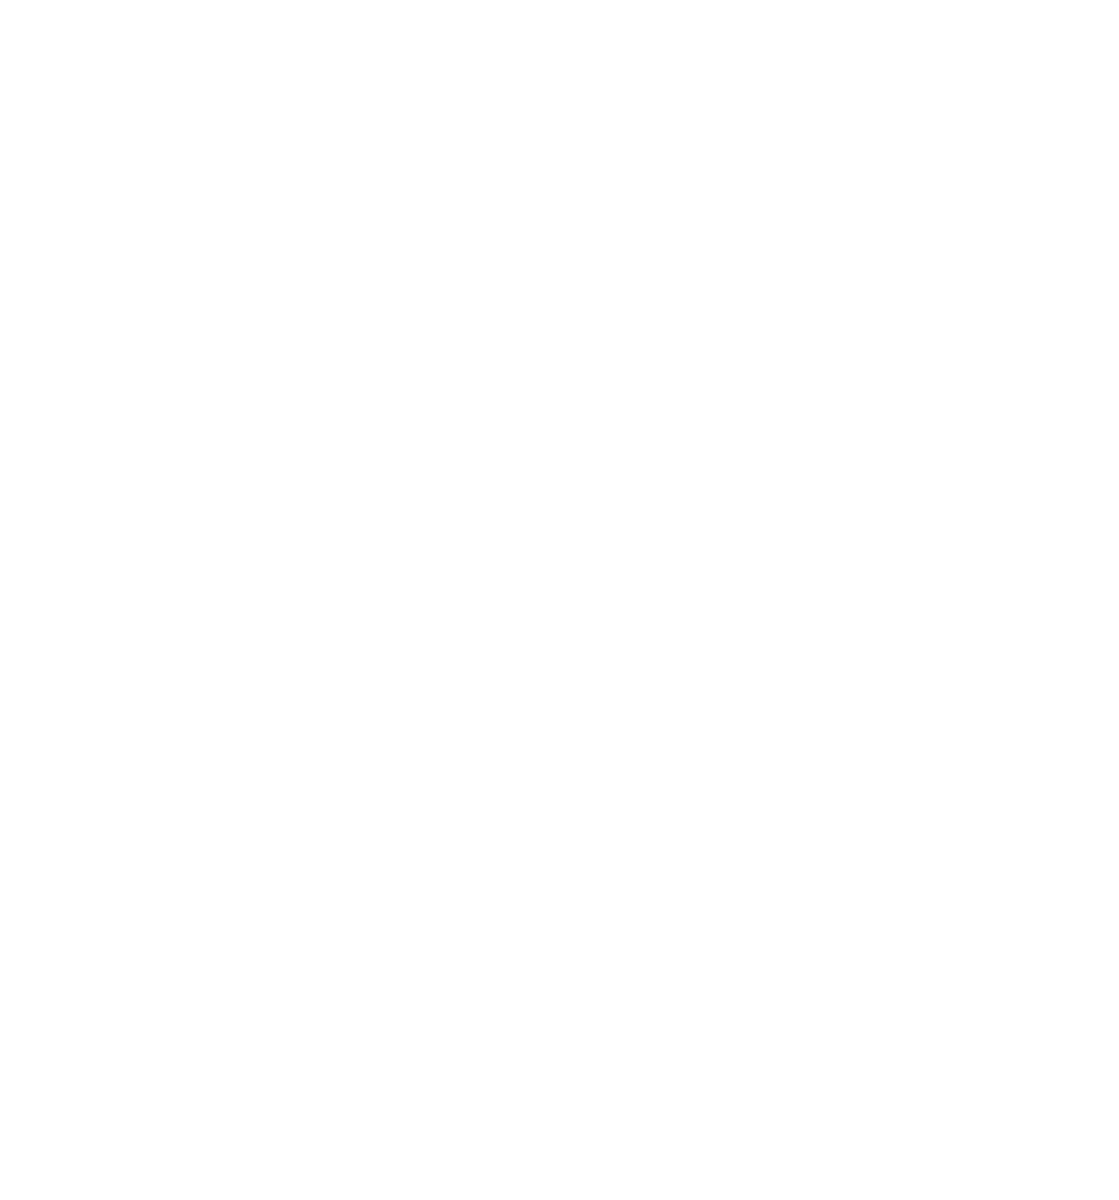 document icon